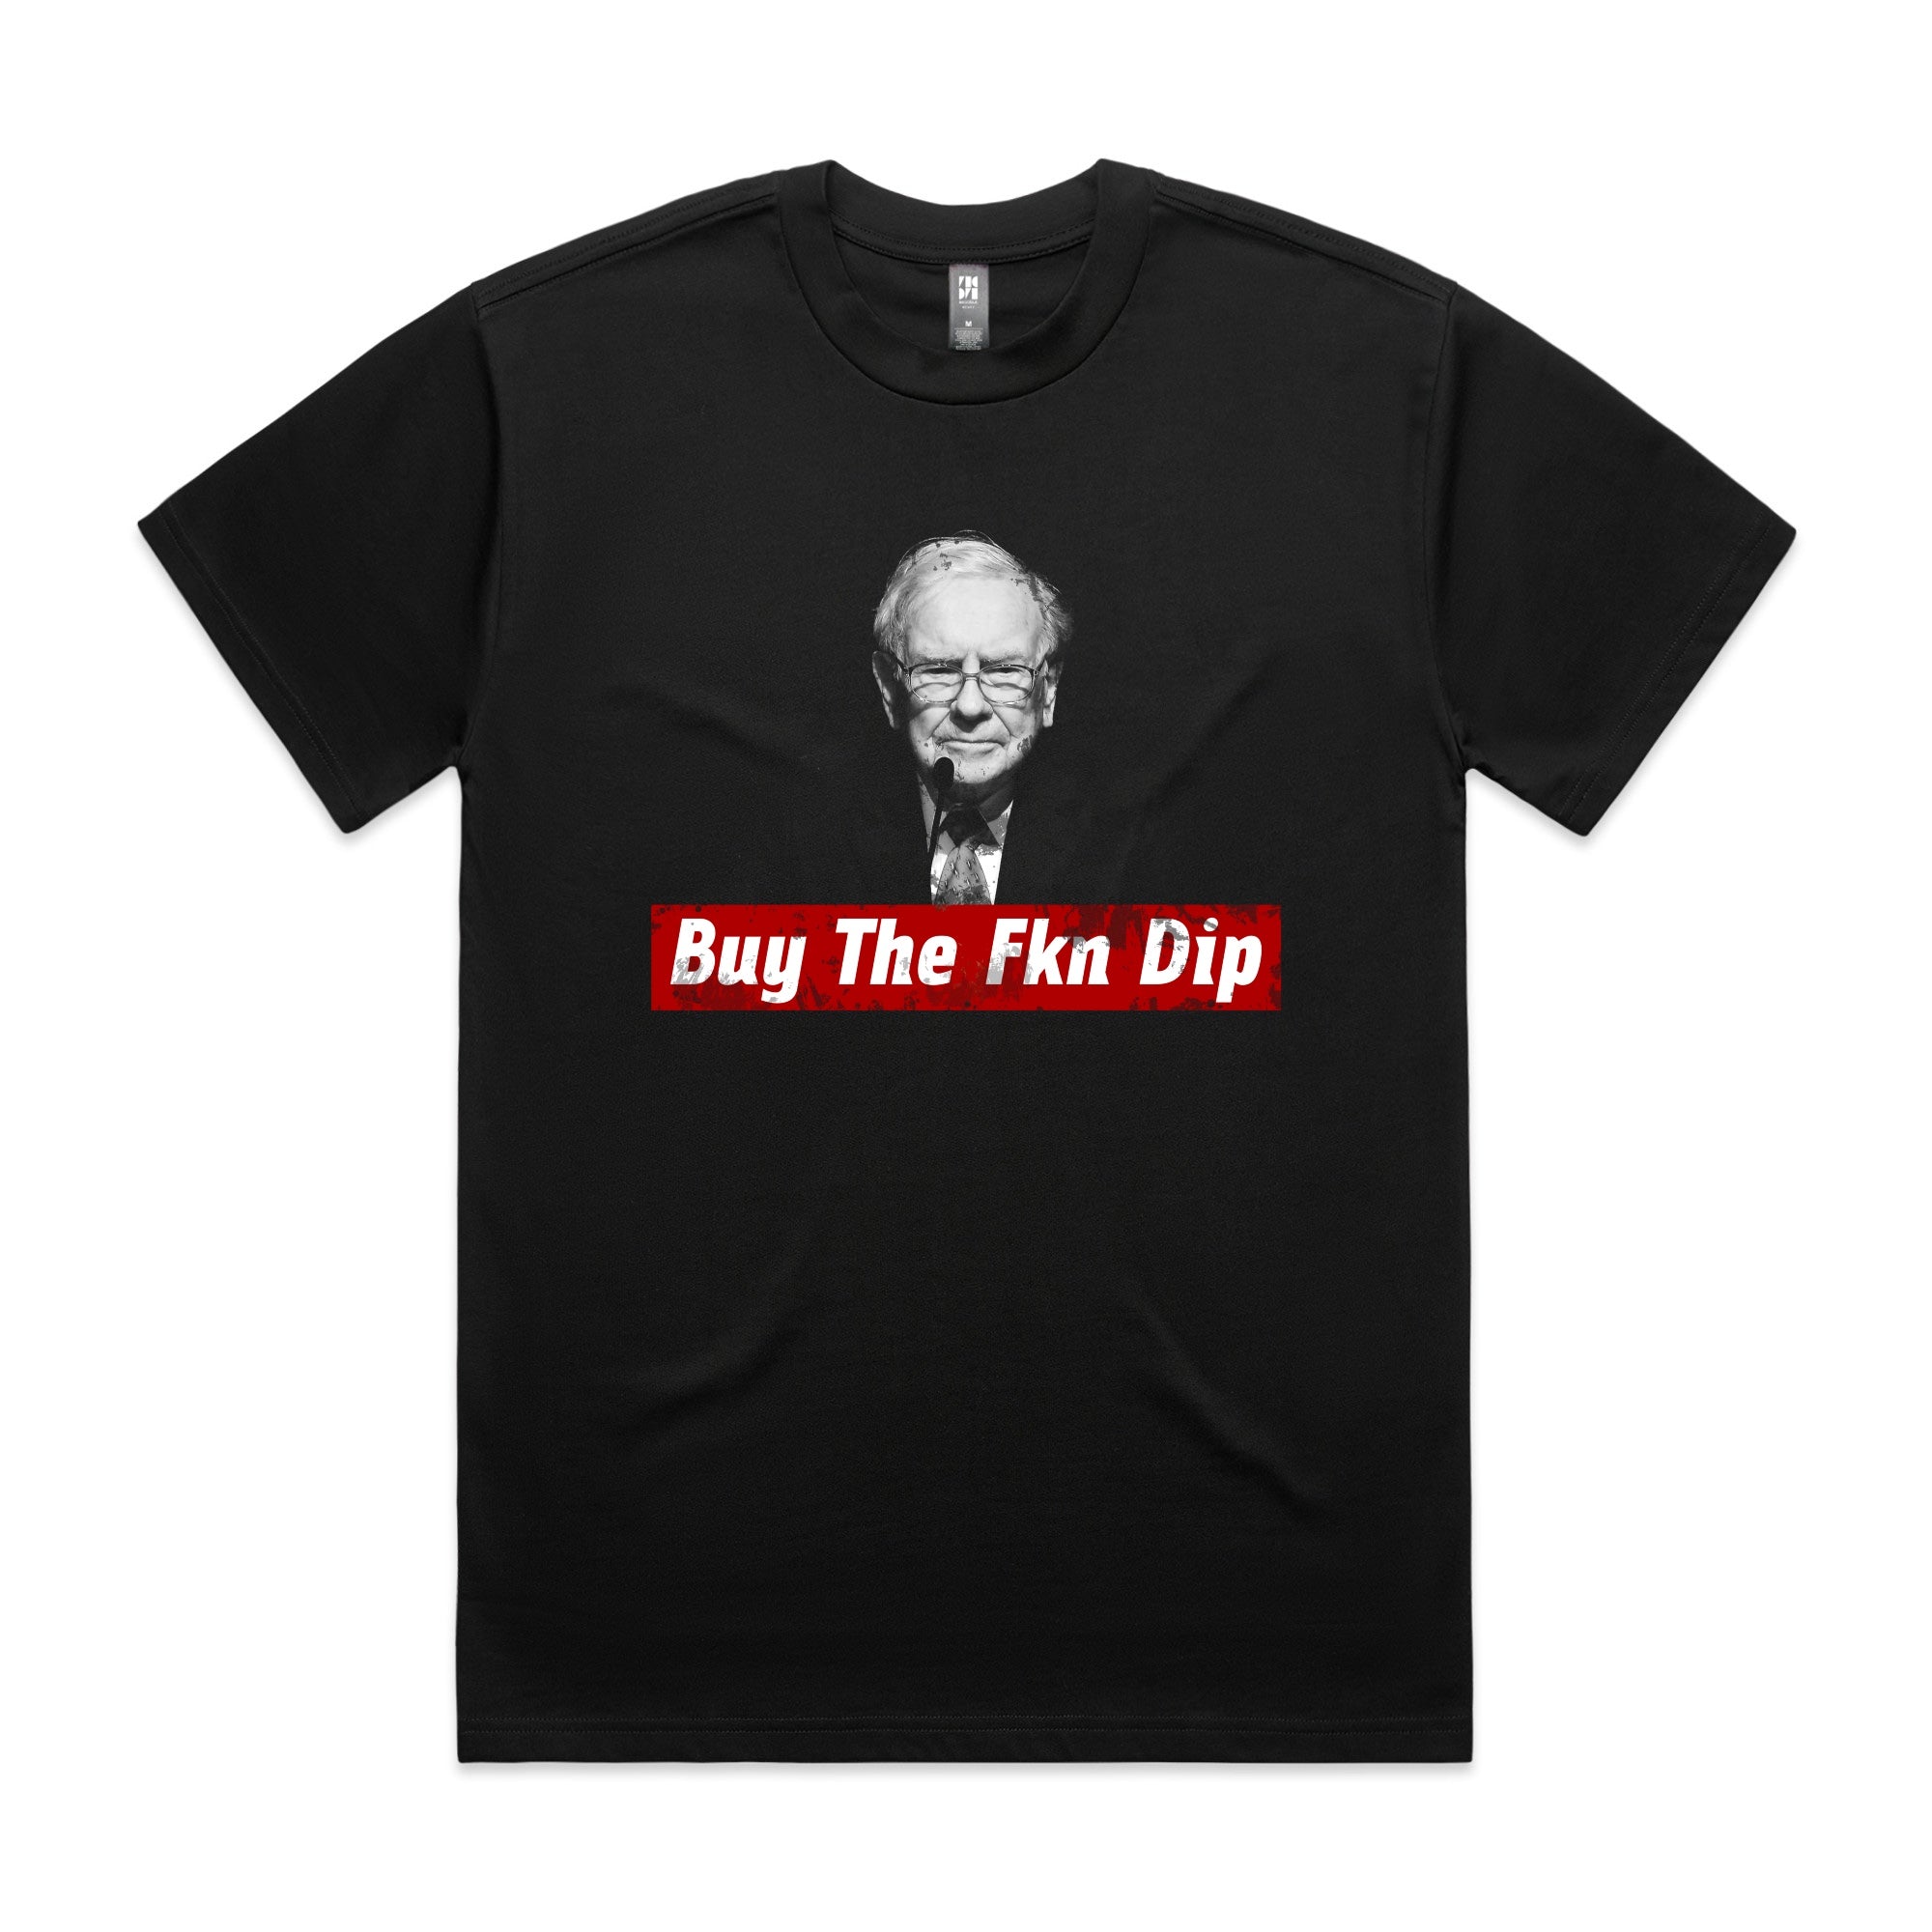 Buy The Dip Tee